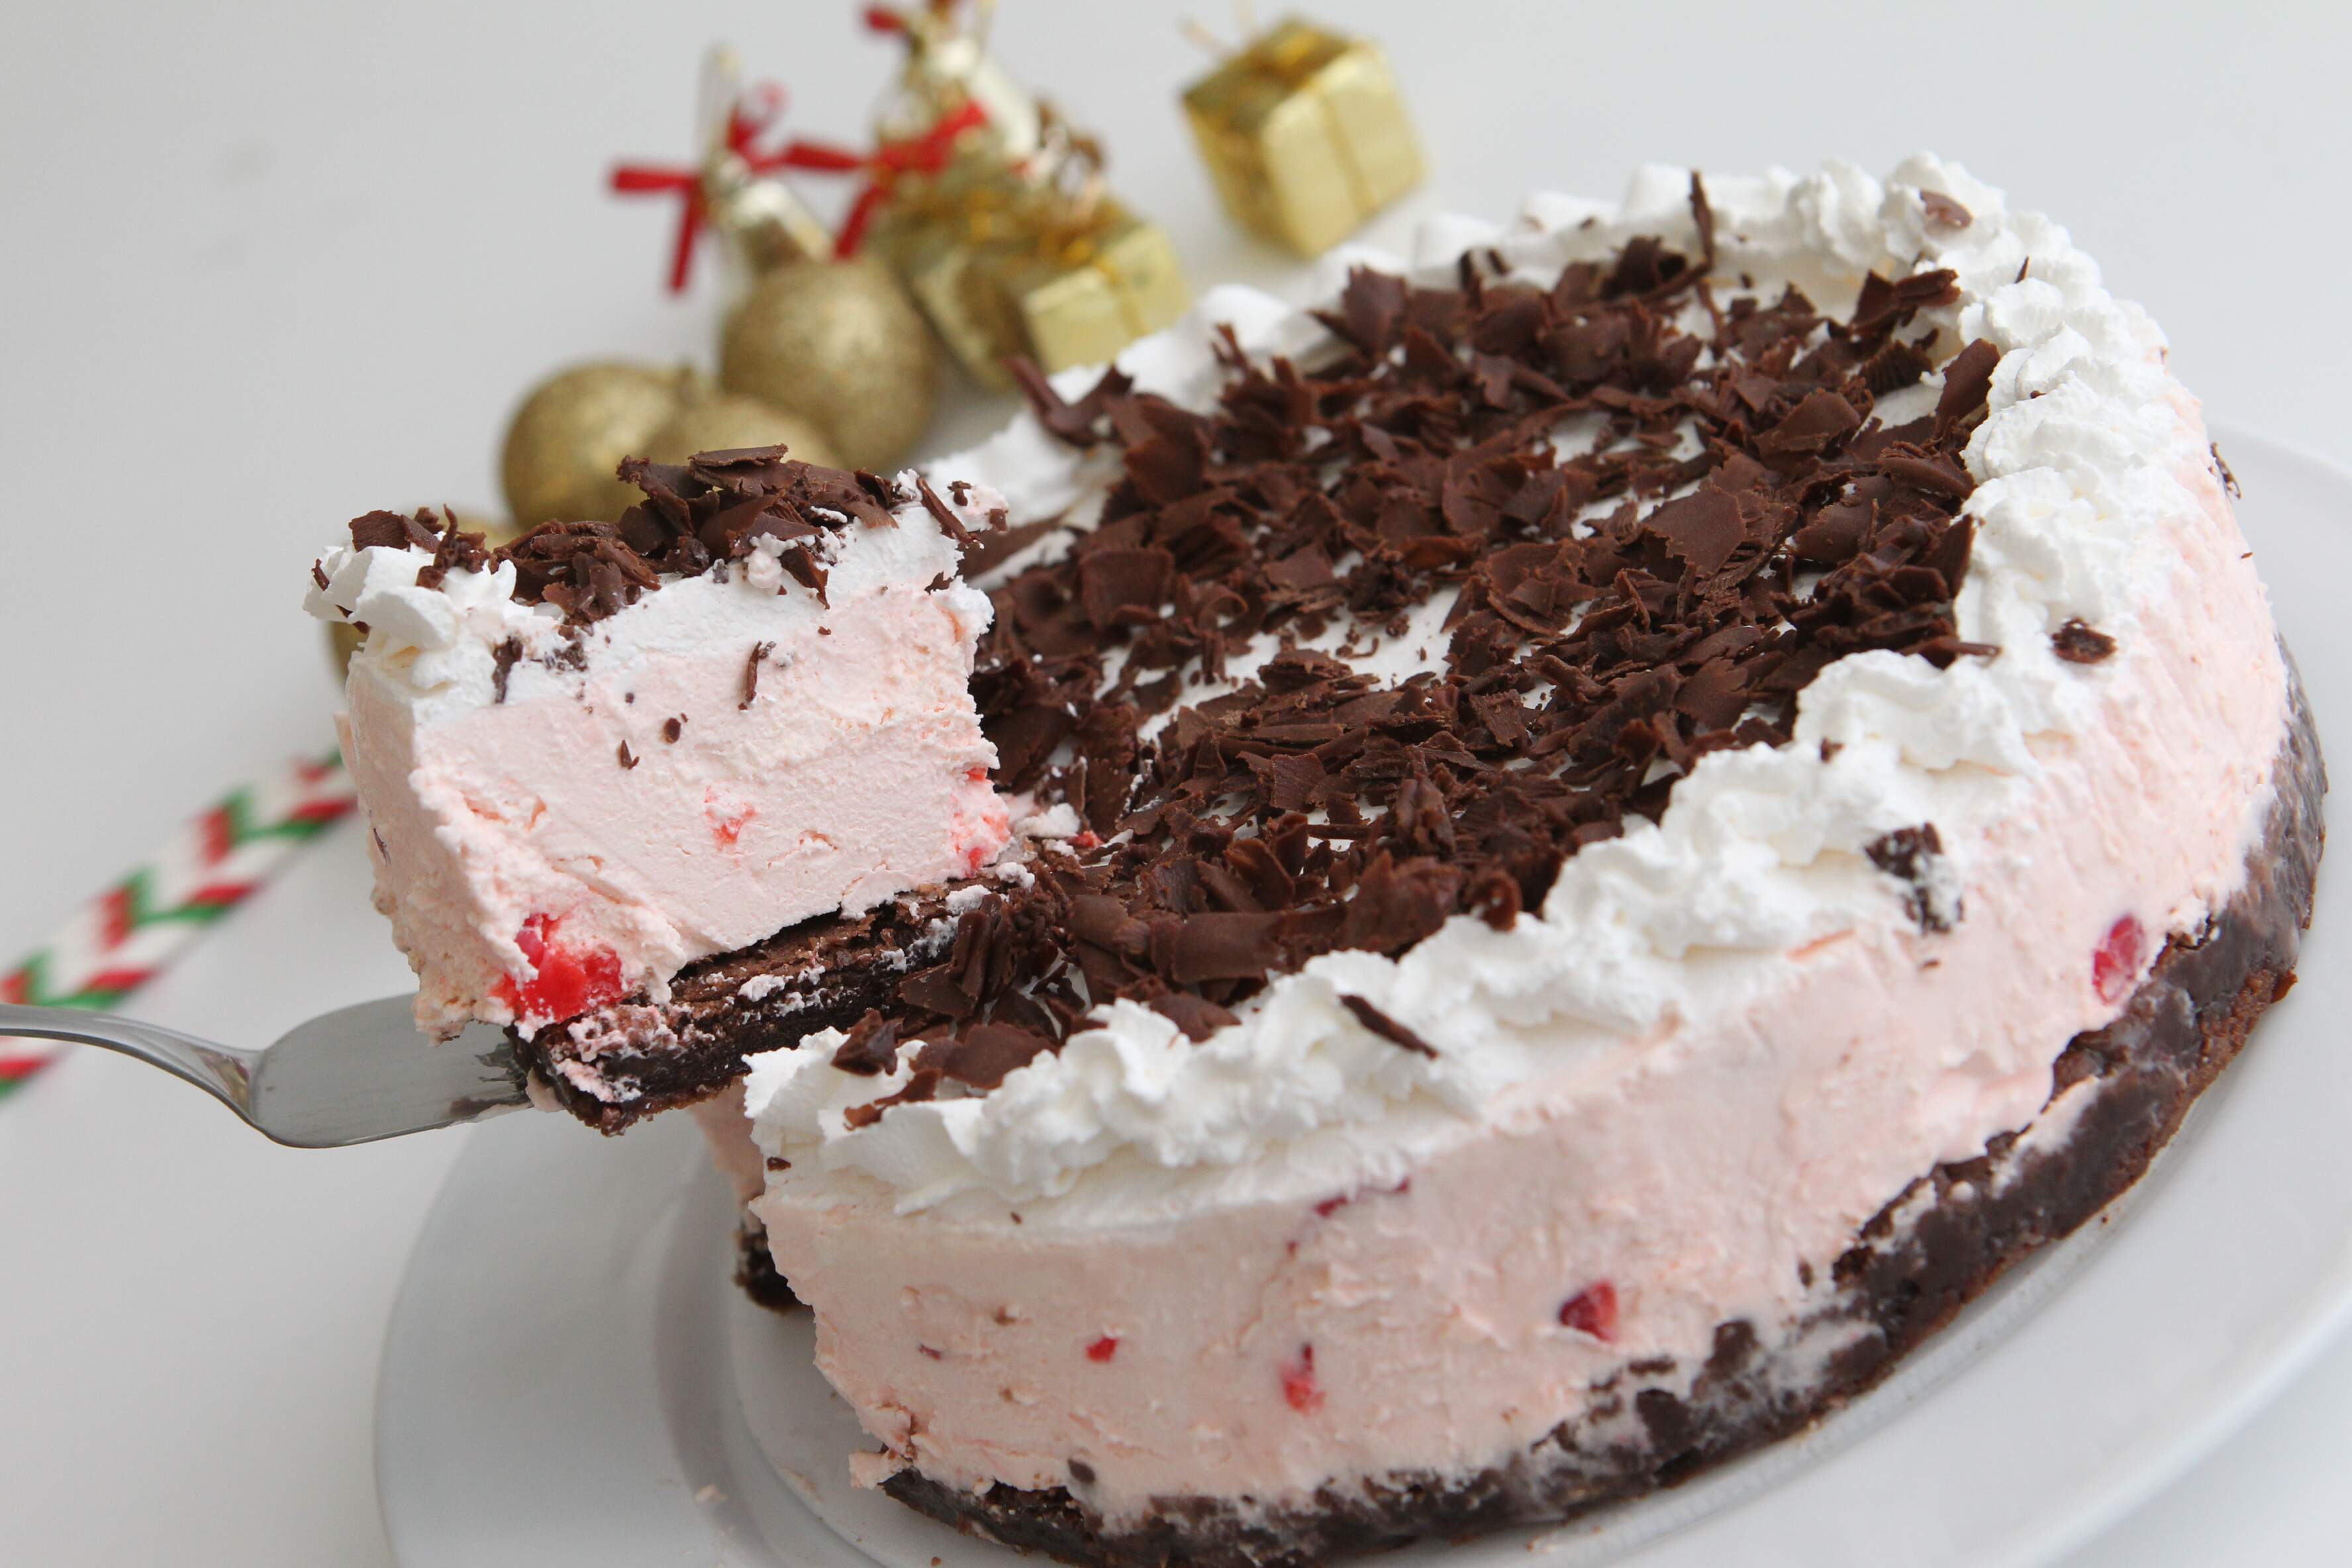 Essa torta fica linda e combina com as festas de fim de ano